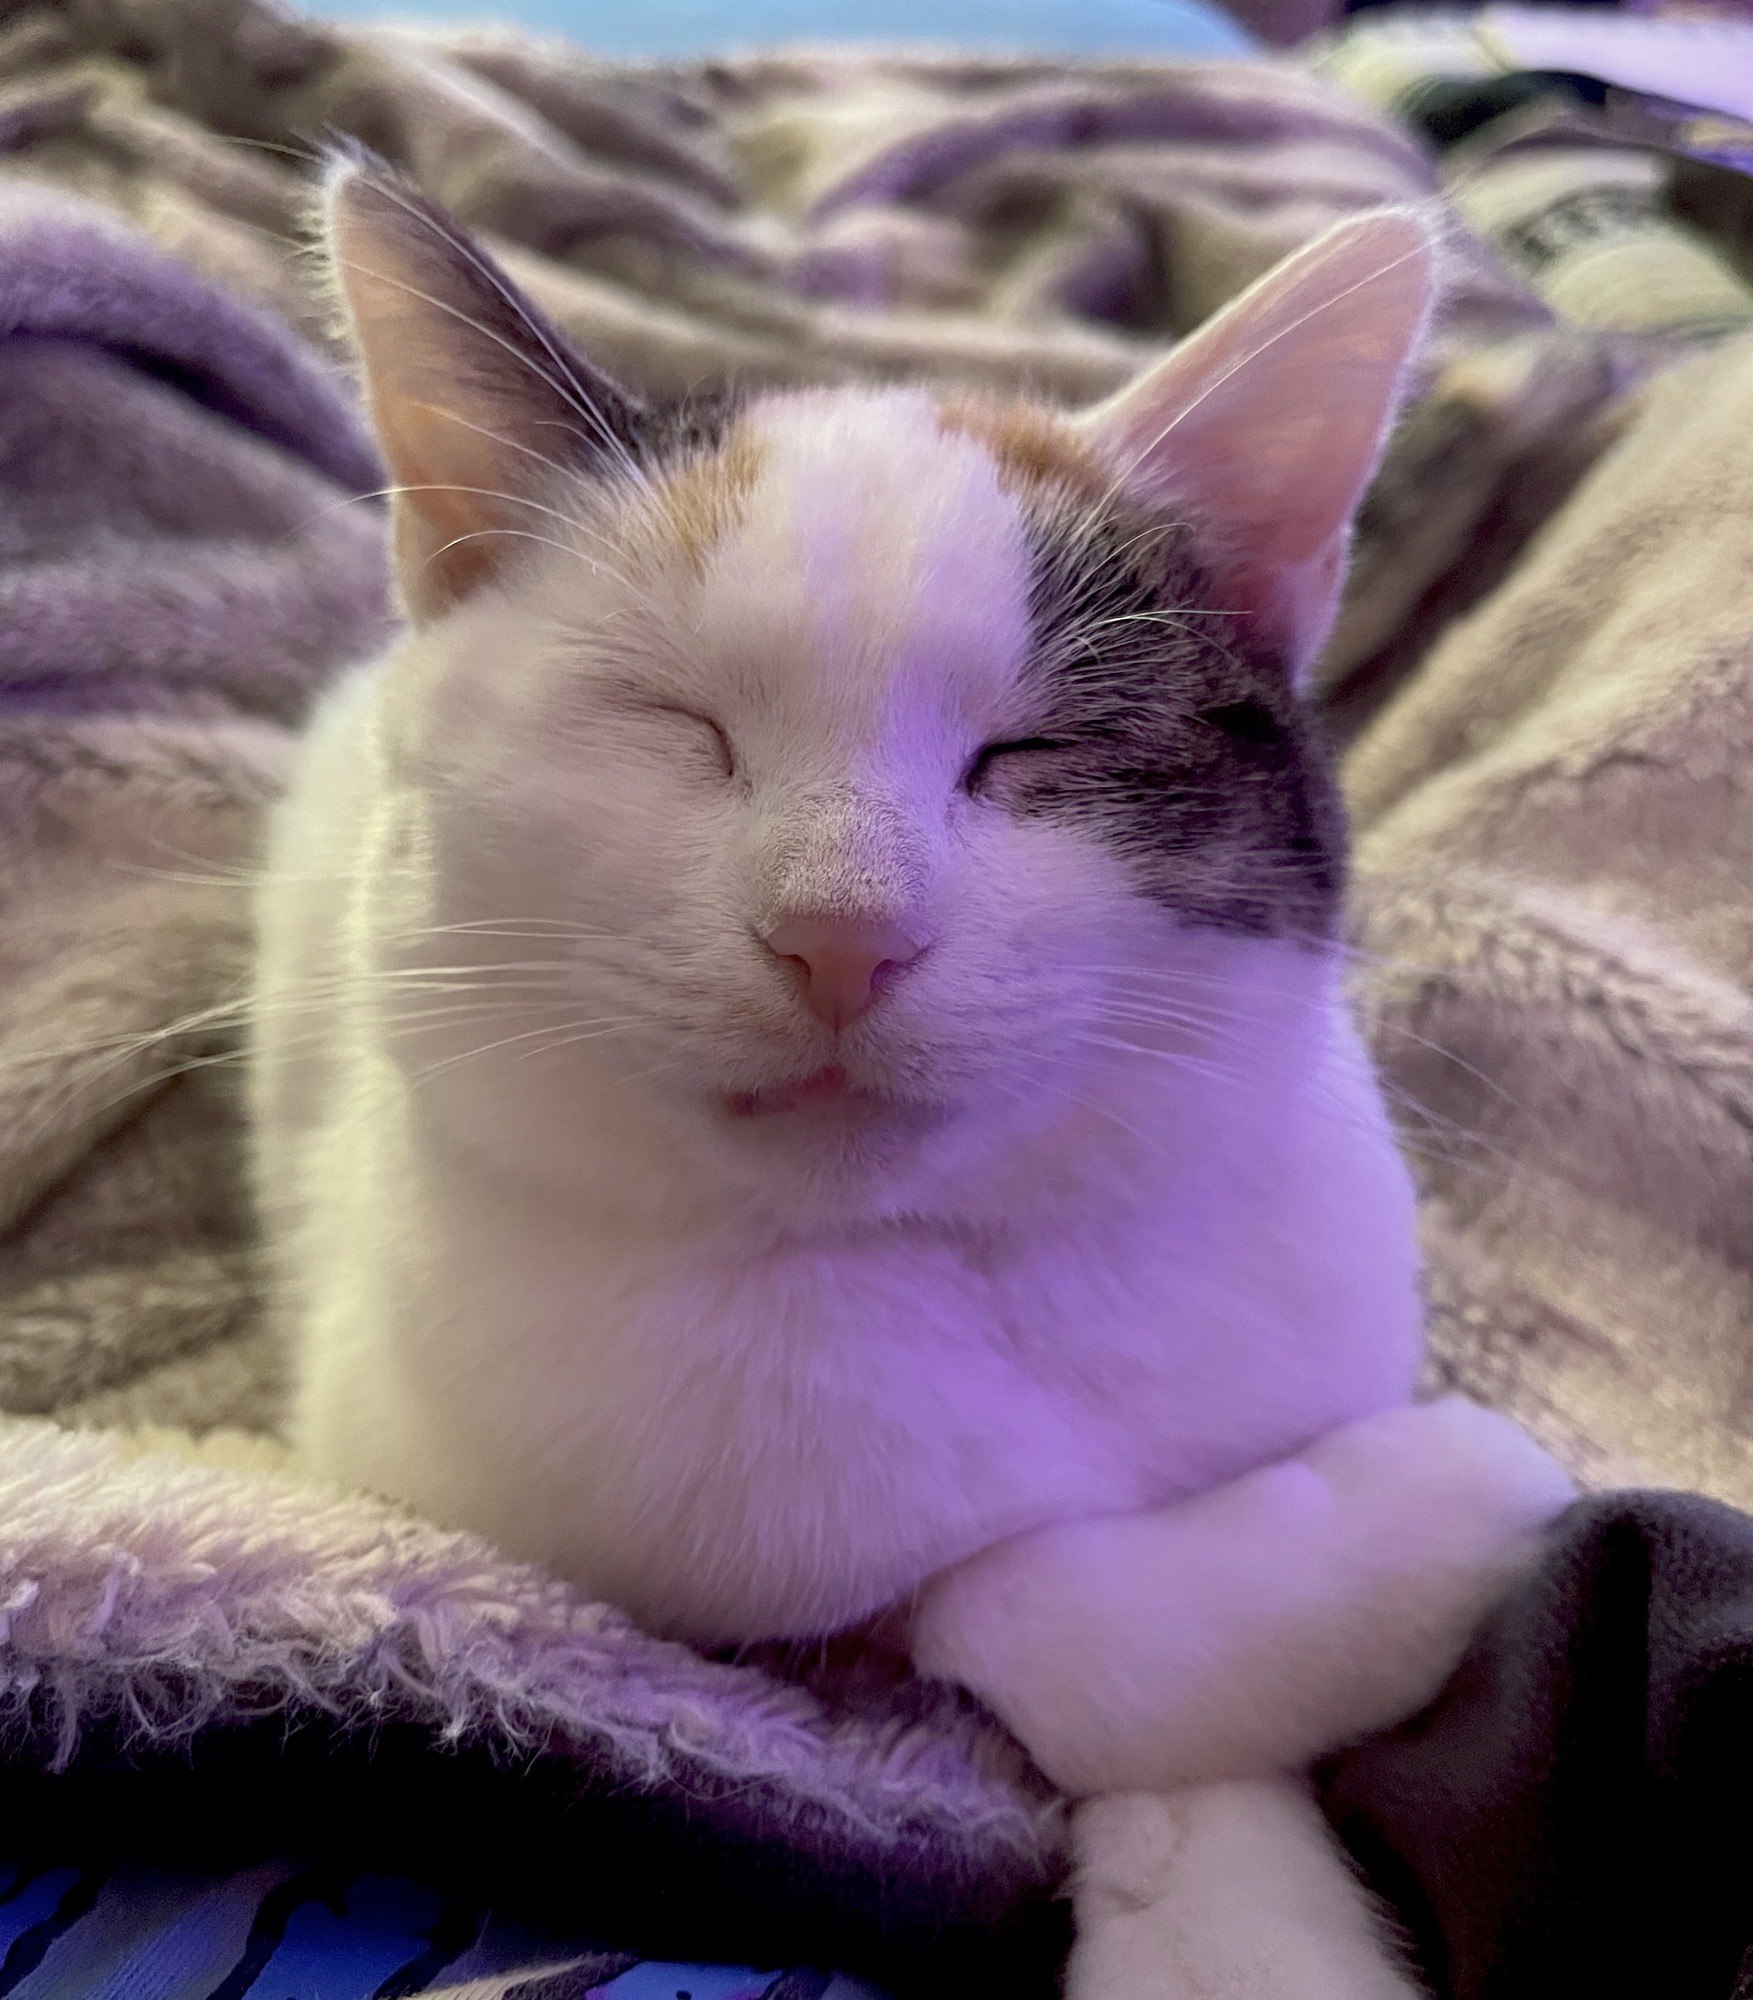 Violet, a piebald cat resting on a blanket